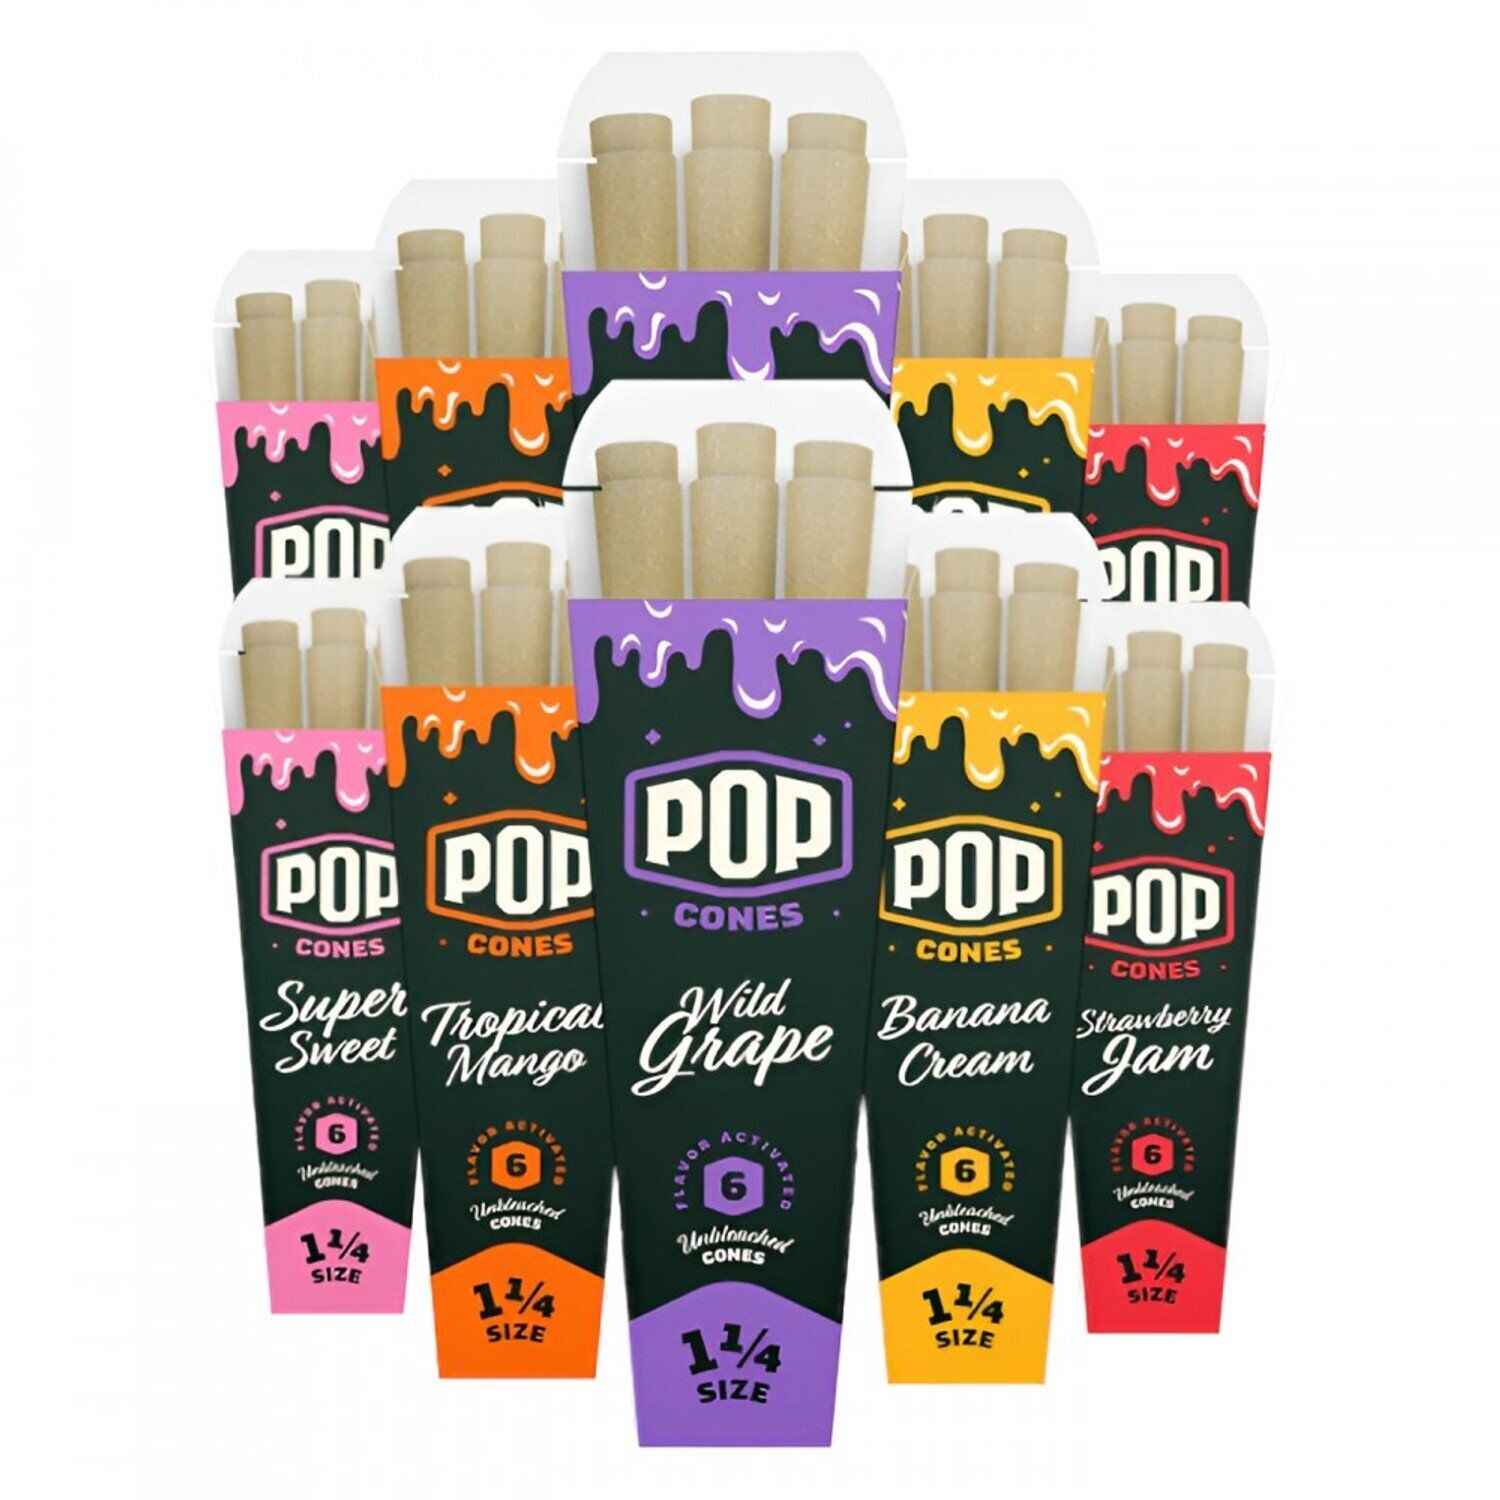 5 Pop Cones Variety Packs - 1 1/4 - Unbleached